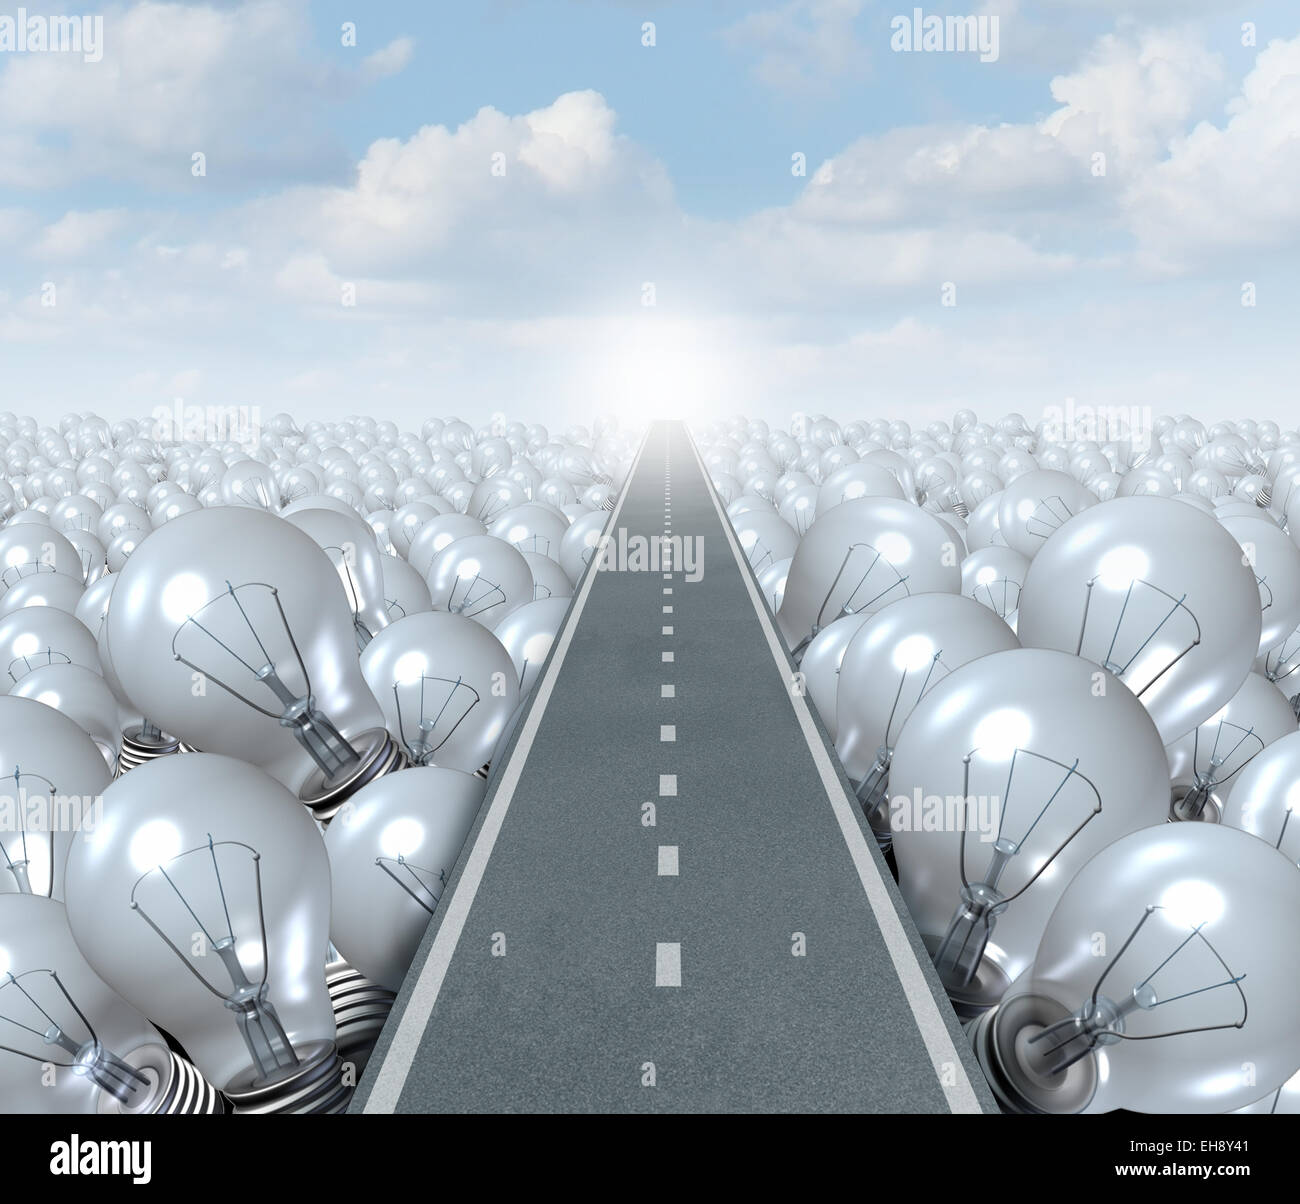 Idee-Straße und kreativen Weg-Business-Konzept als Straße oder Autobahn schneiden durch eine Landschaft von Glühbirnen als Symbol und Metapher für Innovationserfolg und brainstorming-Lösung. Stockfoto